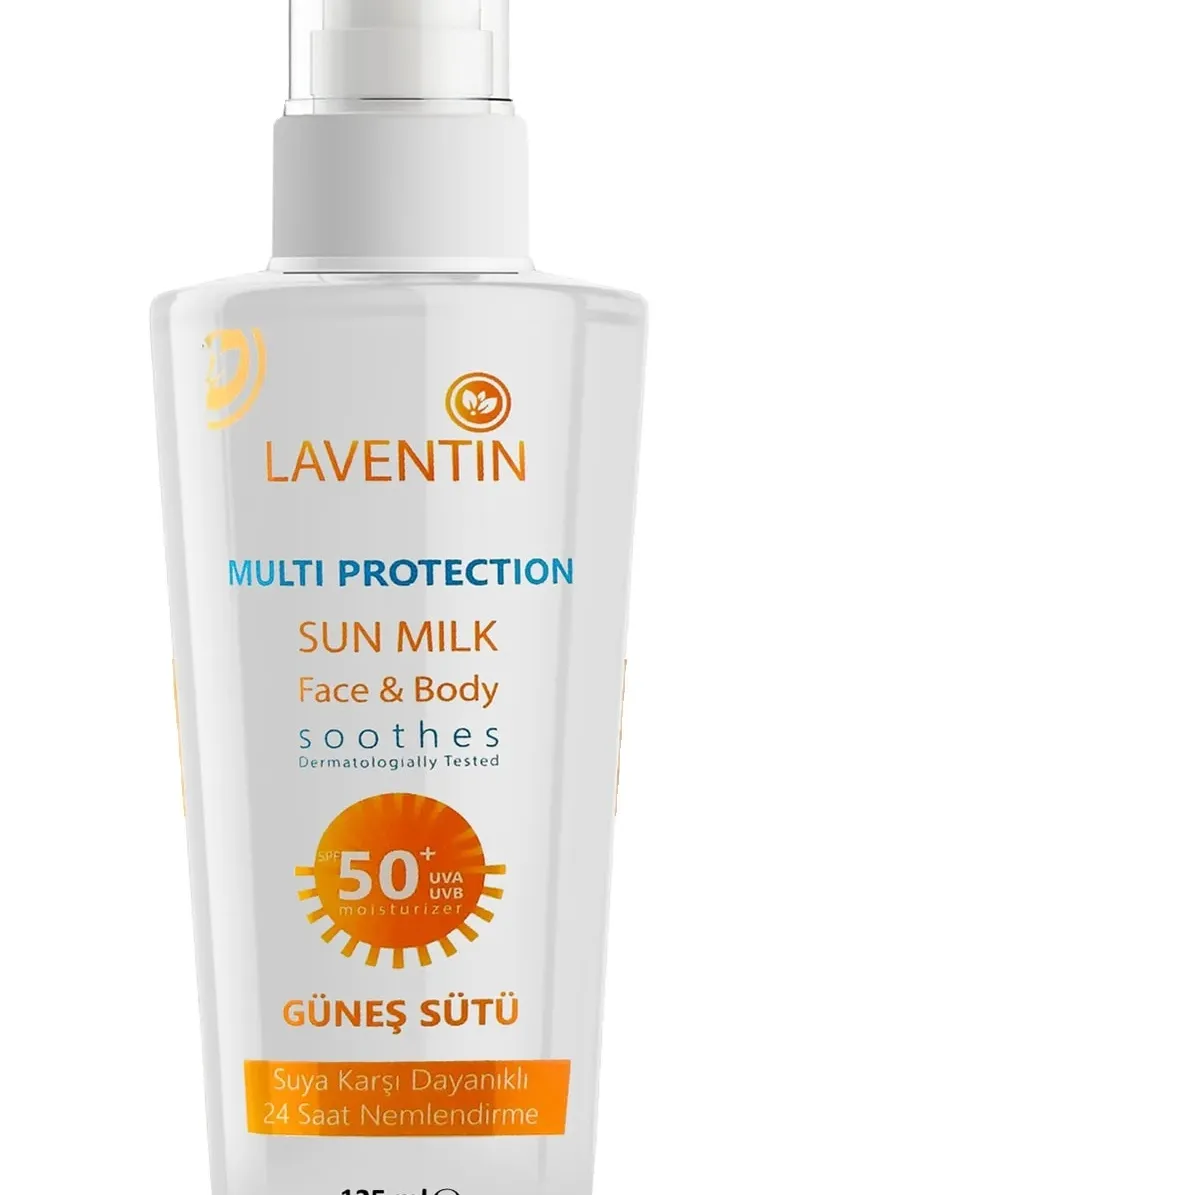 Multi Protection Sun Milk Sonnenschutz Hautpflege produkt Guter Geruch Haut komfort und Weichheit Sicherer und effektiver Schutz